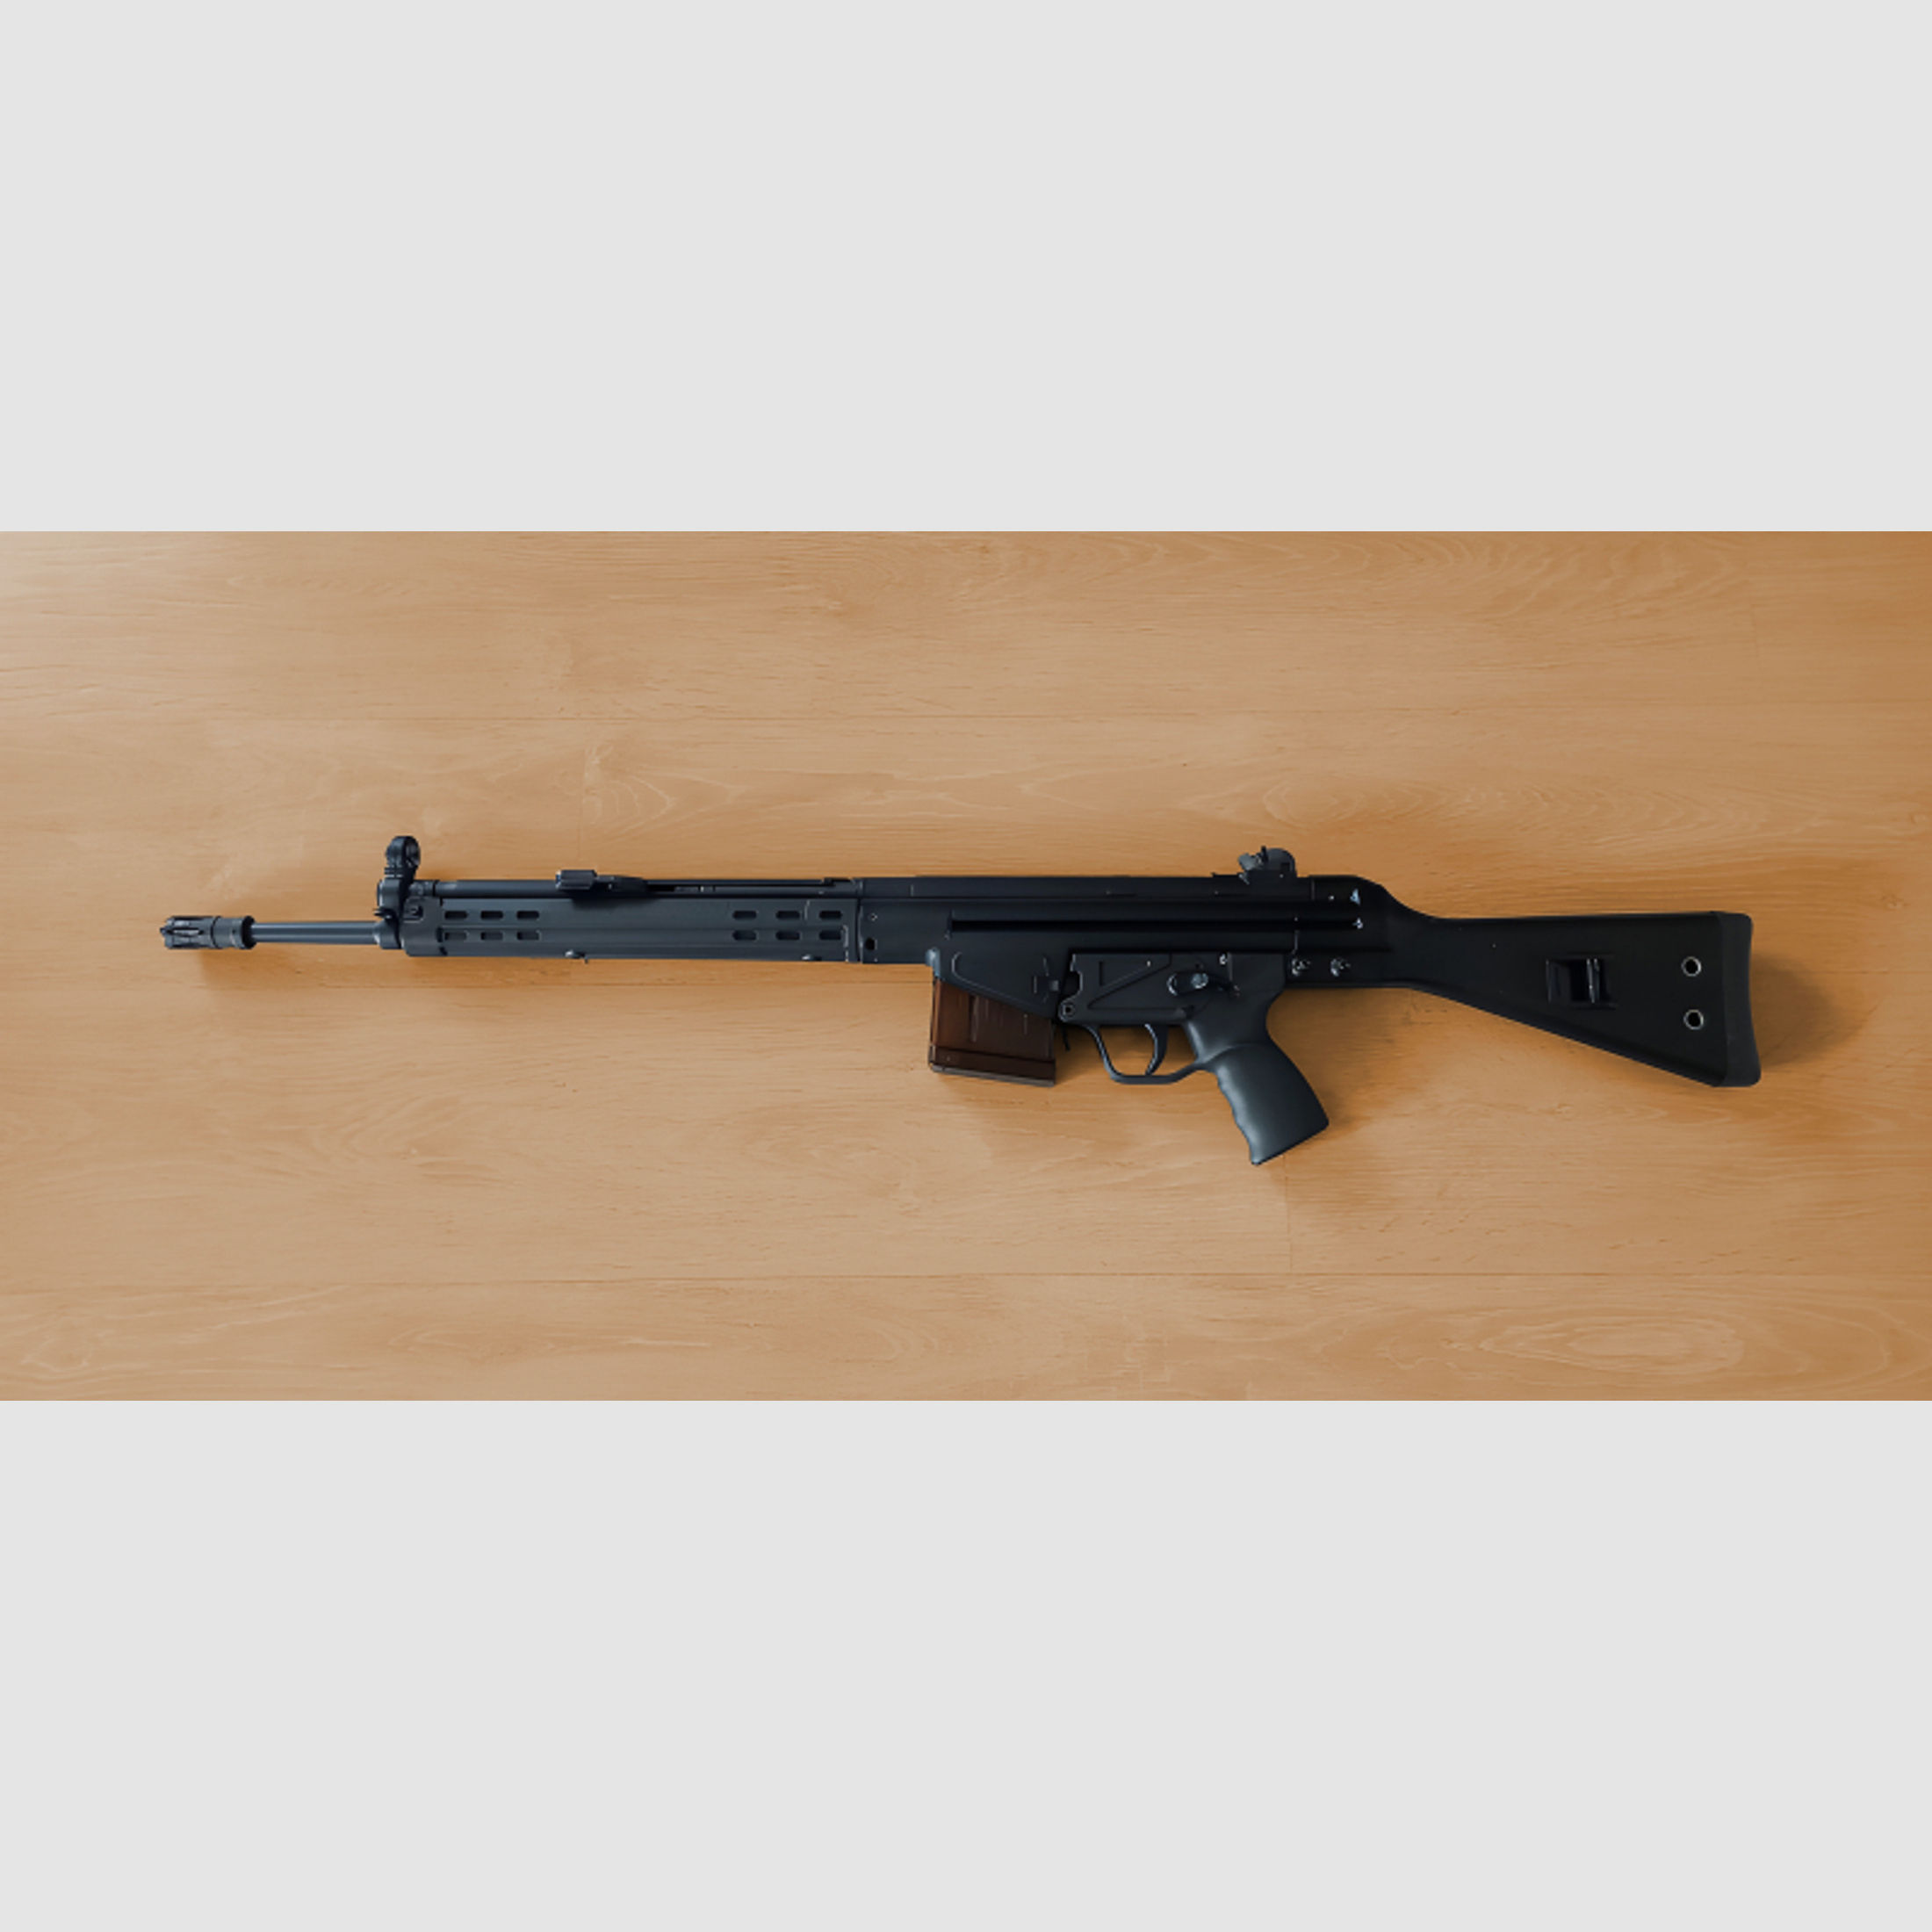 Hochwertiges MKE T41 G3 in Kaliber .308 Winchester - Nur 250 Schuss!